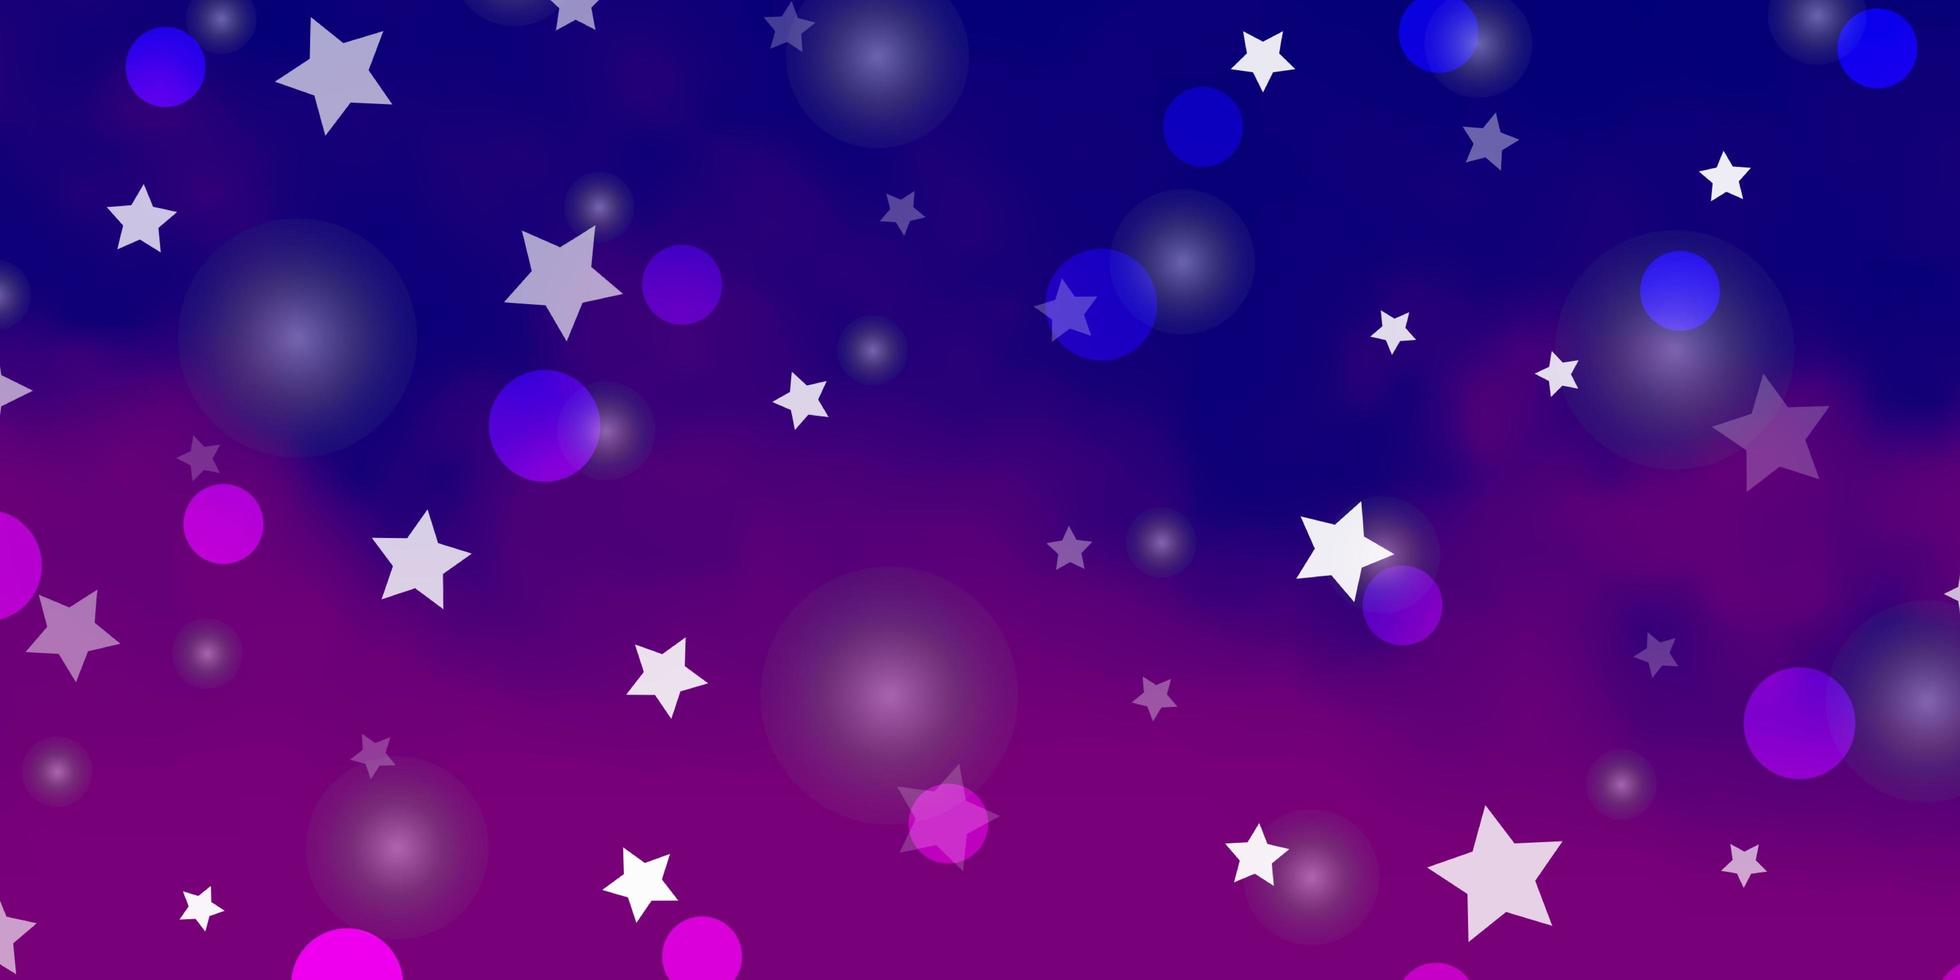 Fondo de vector violeta, rosa claro con círculos, estrellas.